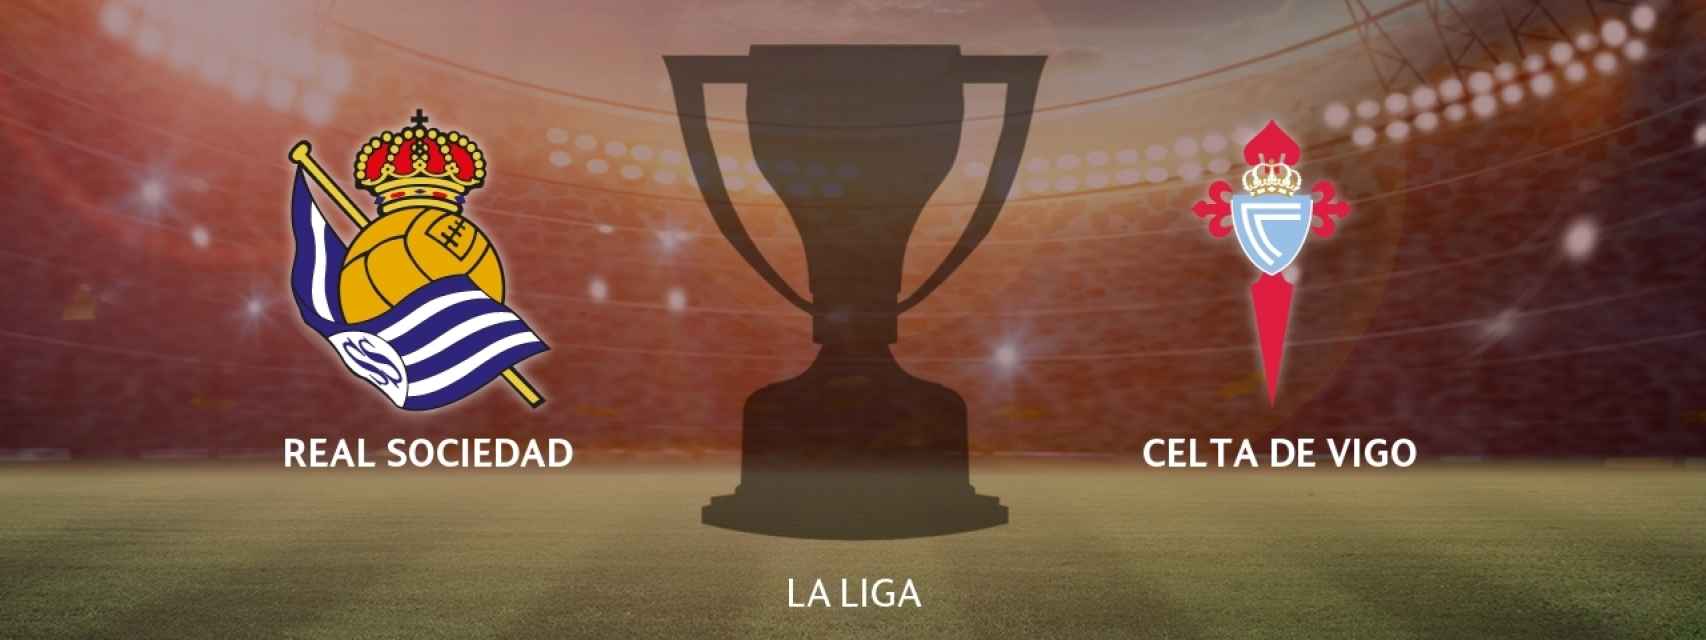 Real Sociedad - Celta de Vigo, siga en directo el partido de La Liga